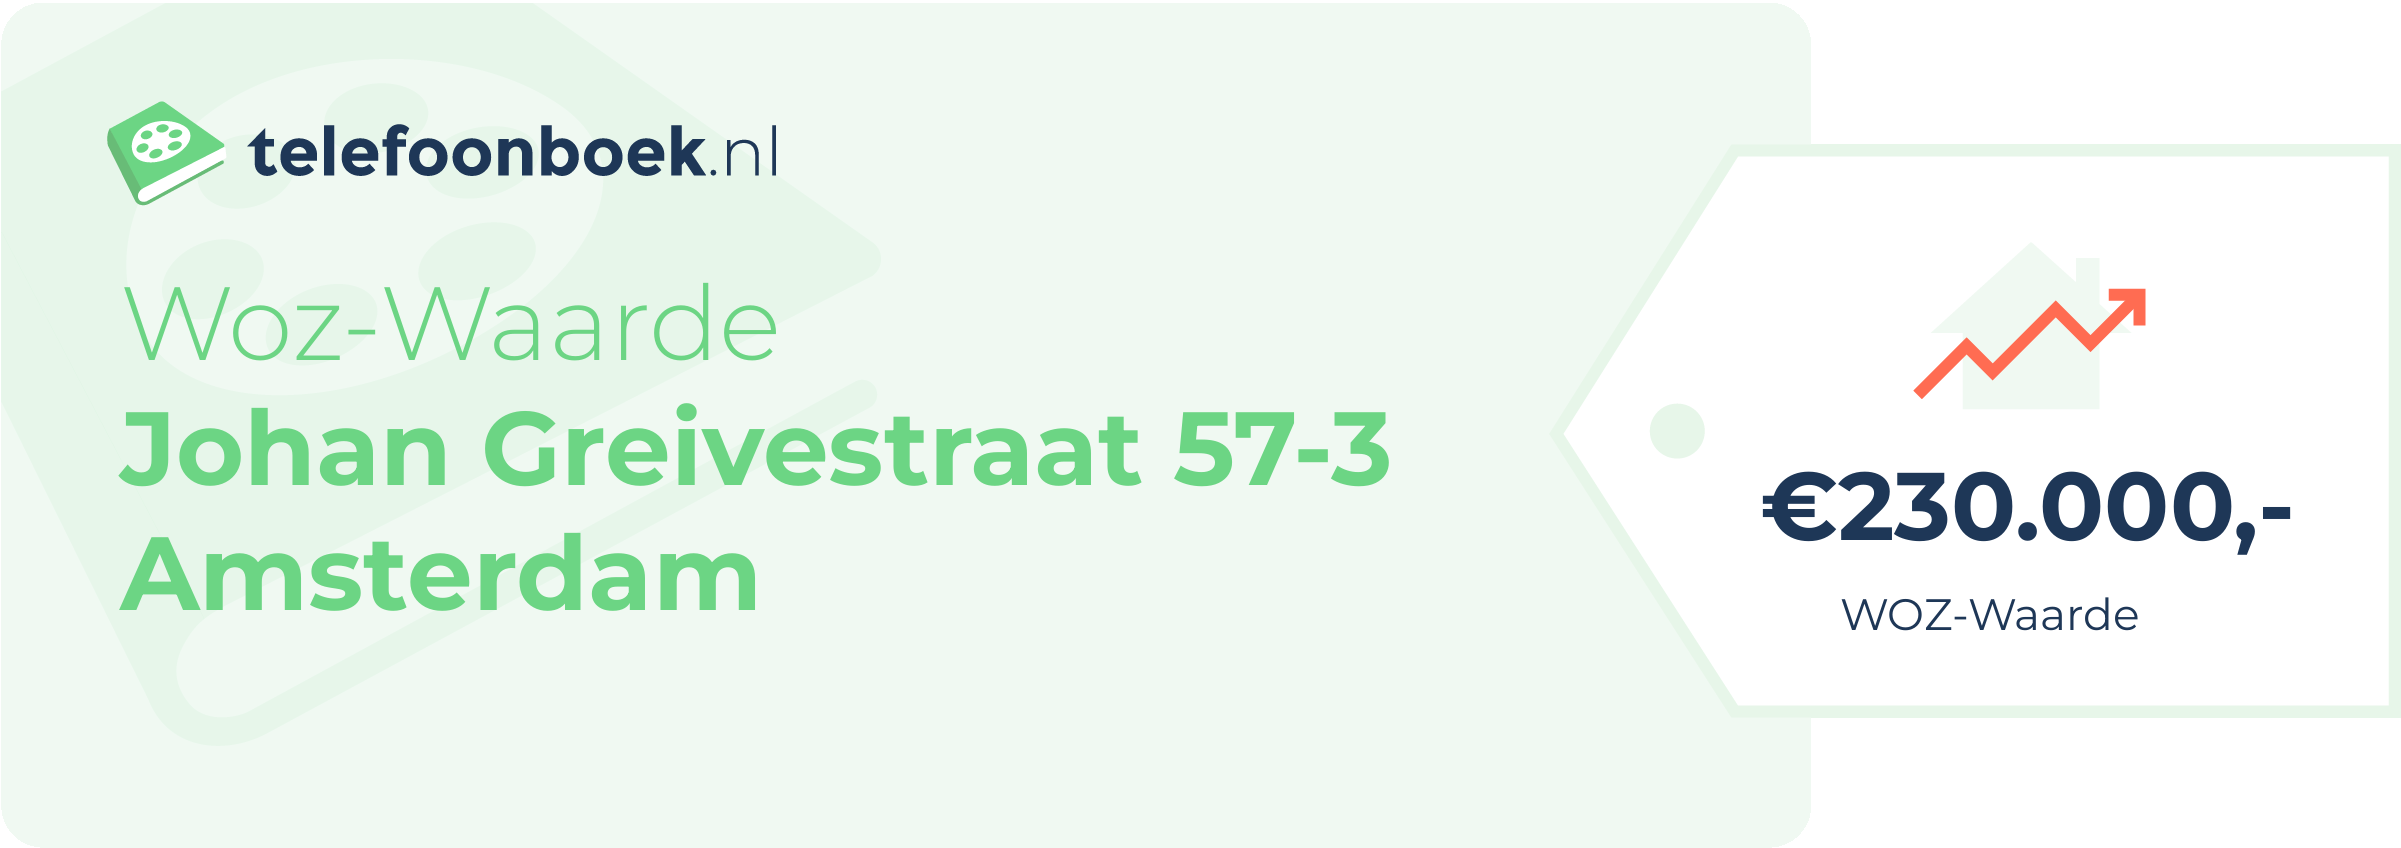 WOZ-waarde Johan Greivestraat 57-3 Amsterdam